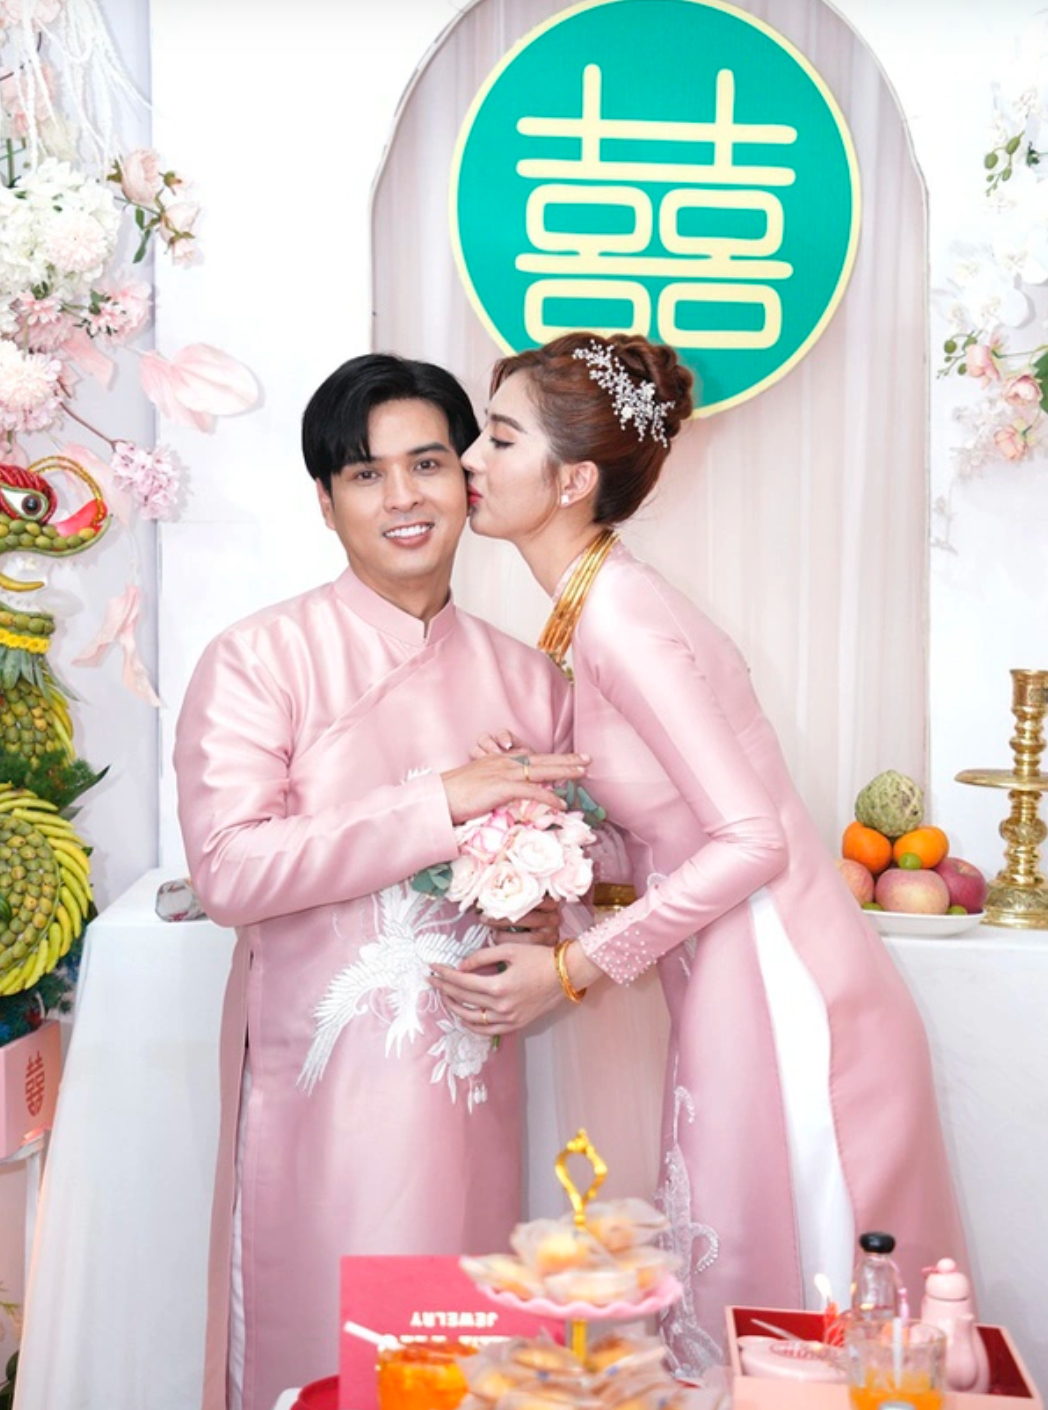 Hồ Quang Hiếu ra 1 điều kiện đặc biệt cho vợ trong đám cưới, là gì mà netizen phải bật cười? - Ảnh 1.